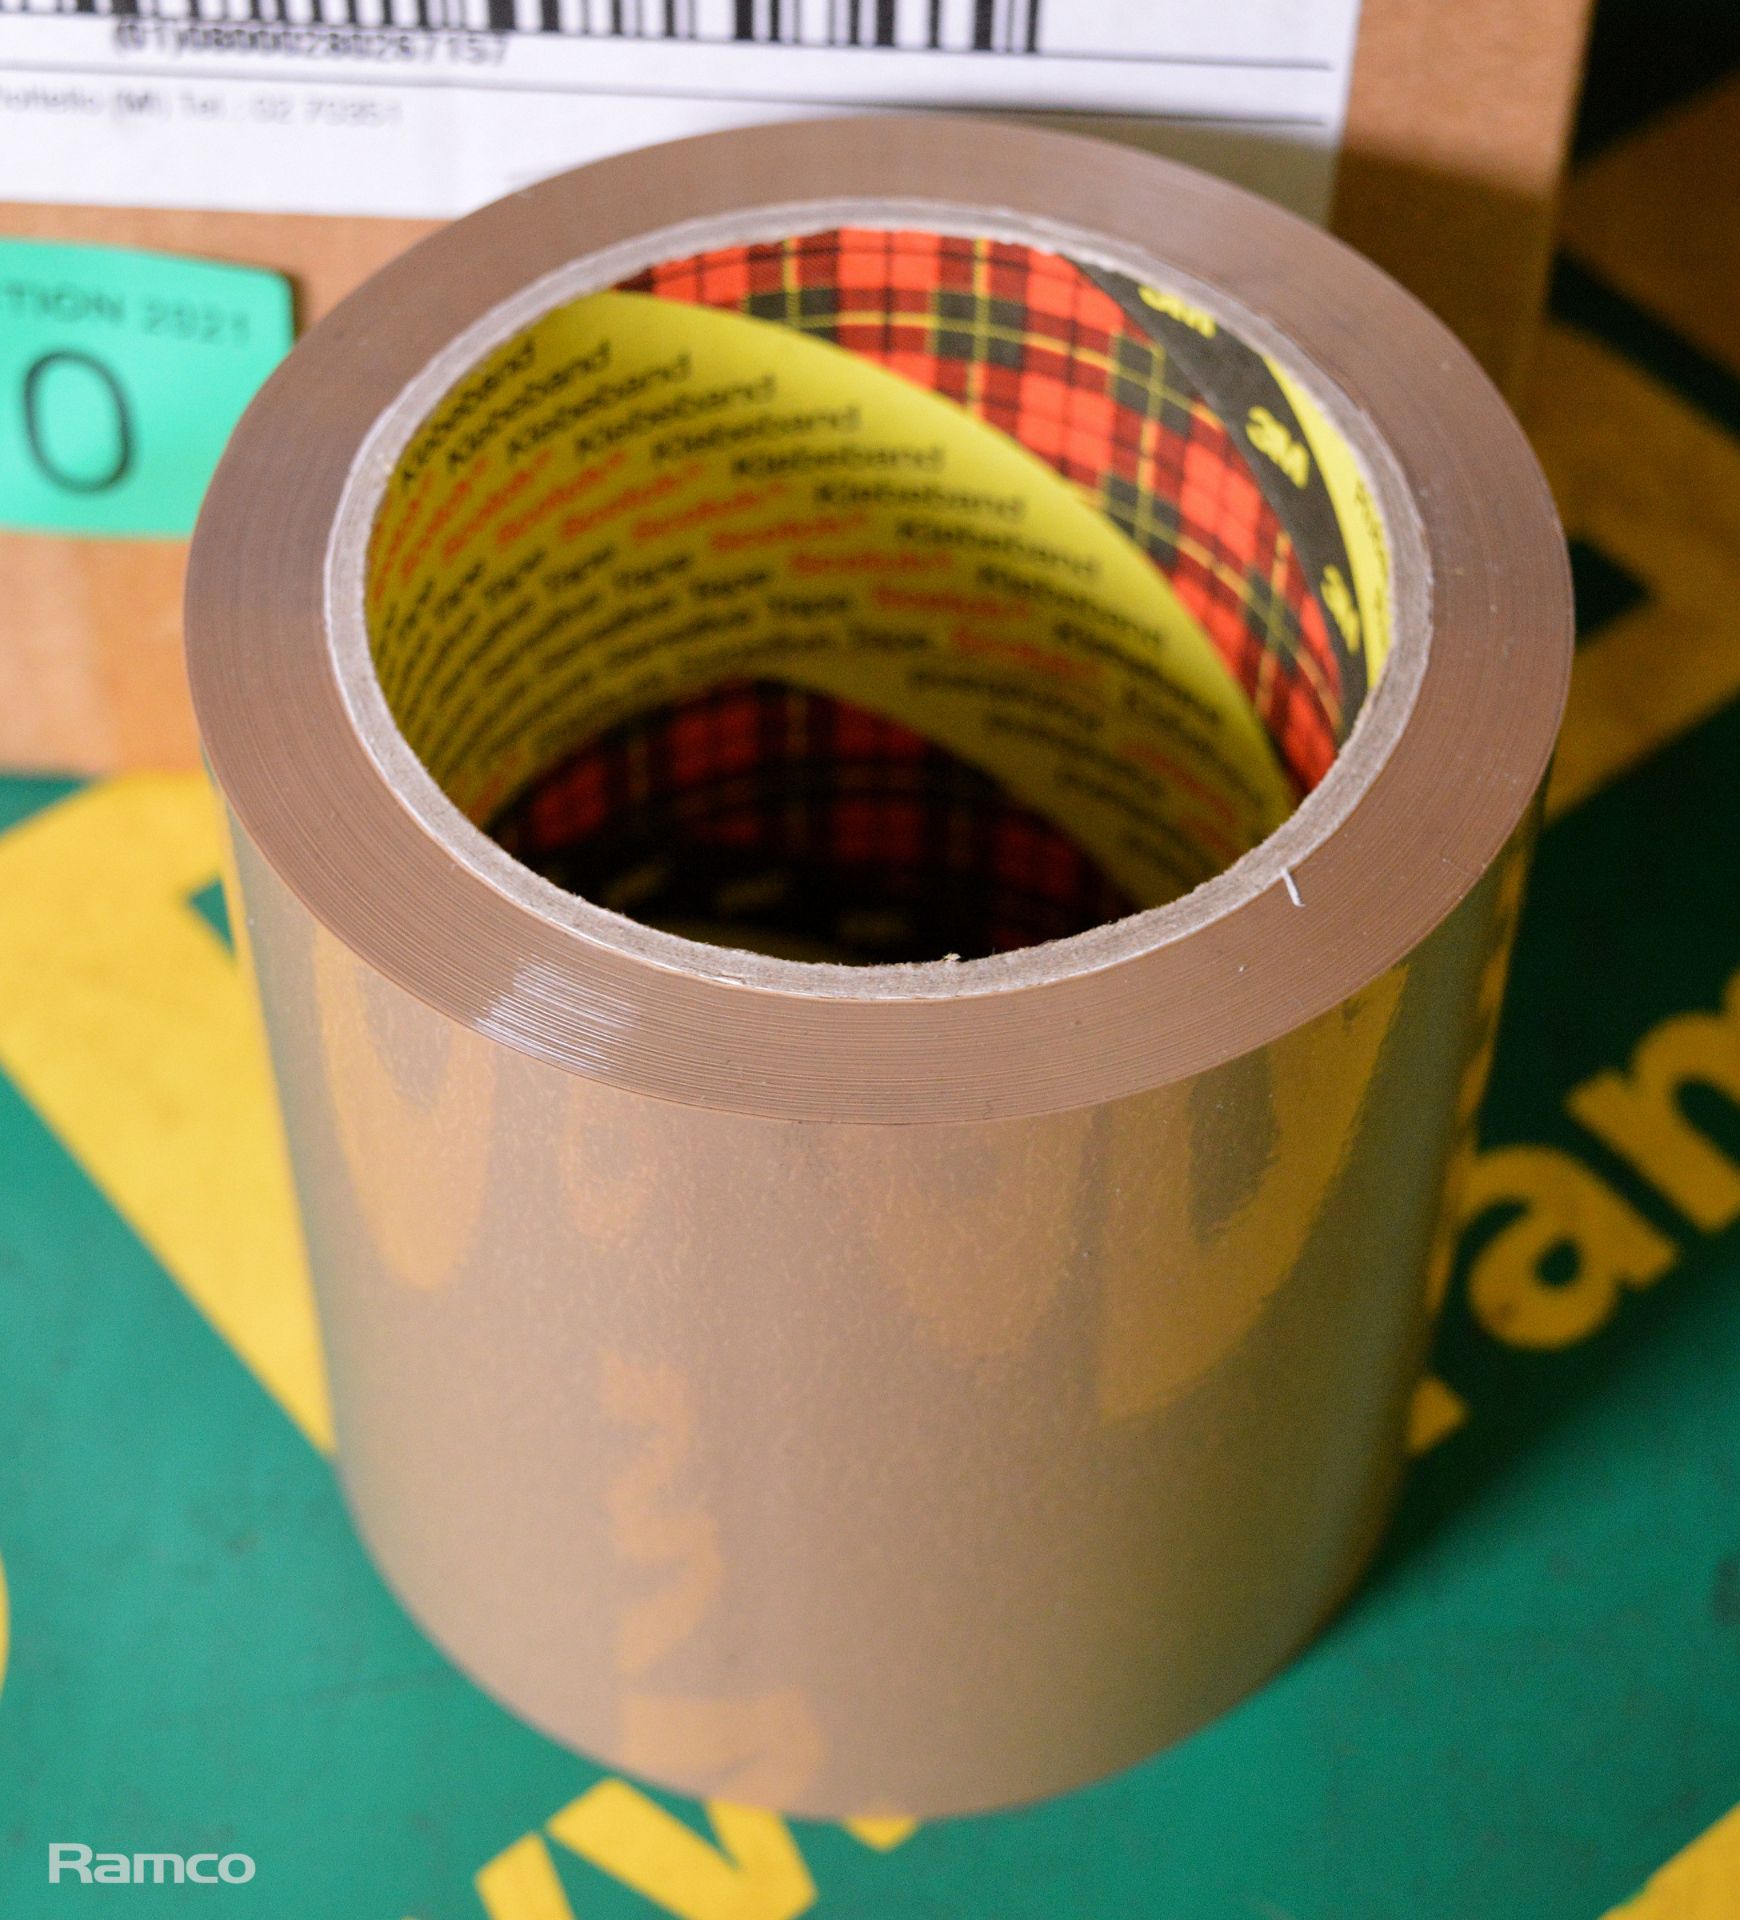 3M Scotch box sealing tape 100mm x 66M - 18 per box - 1 box - Image 2 of 2